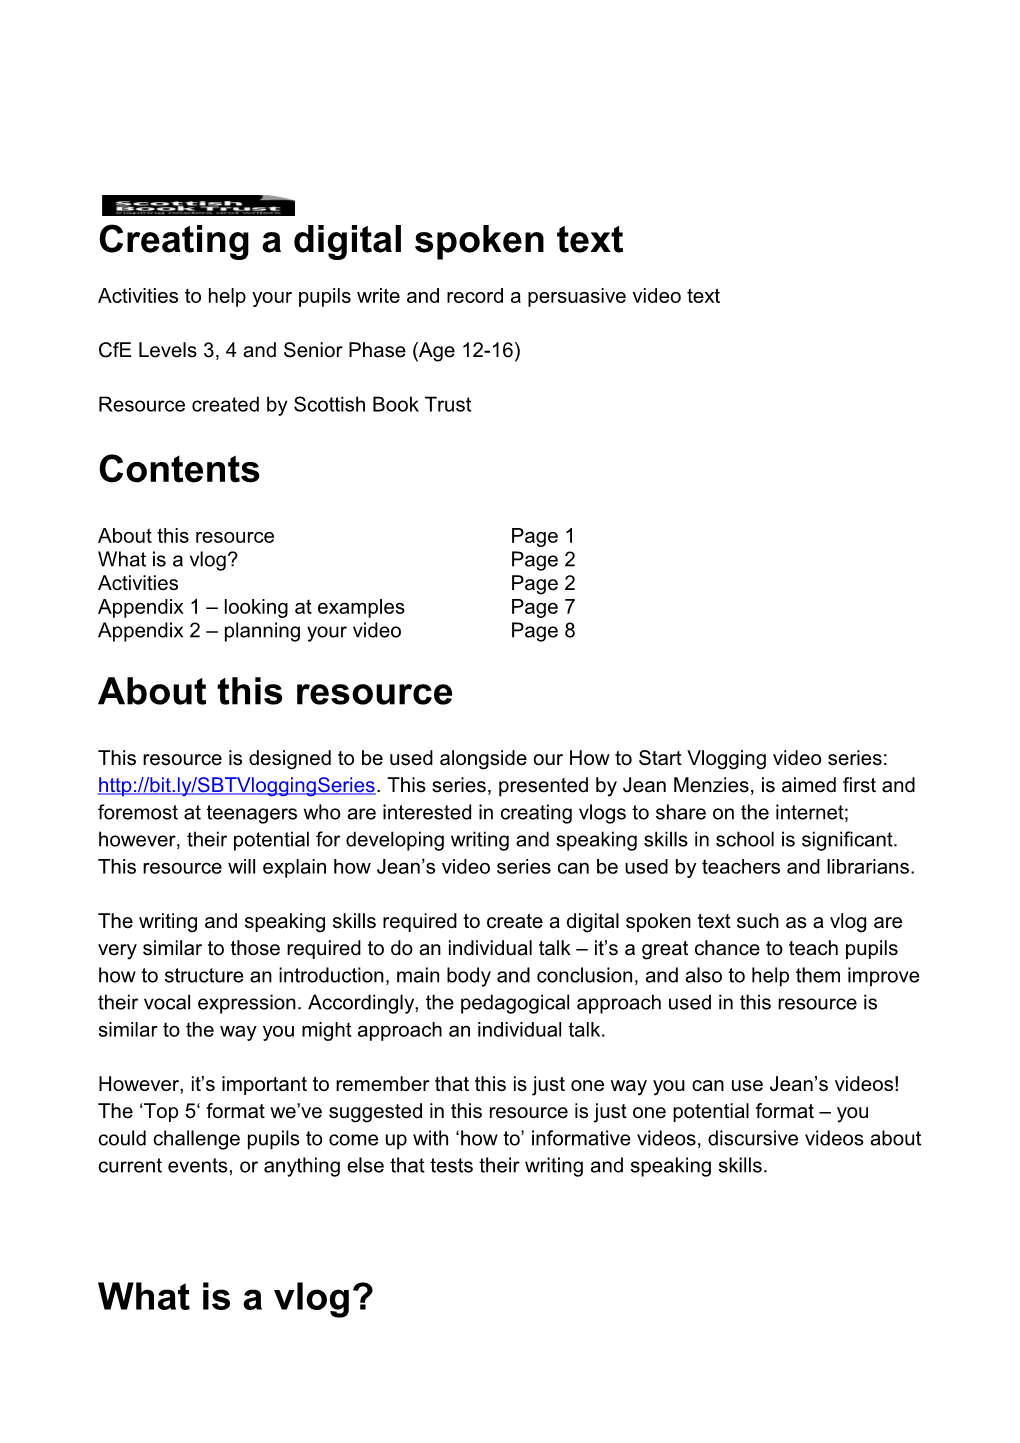 Creating a Digital Spoken Text